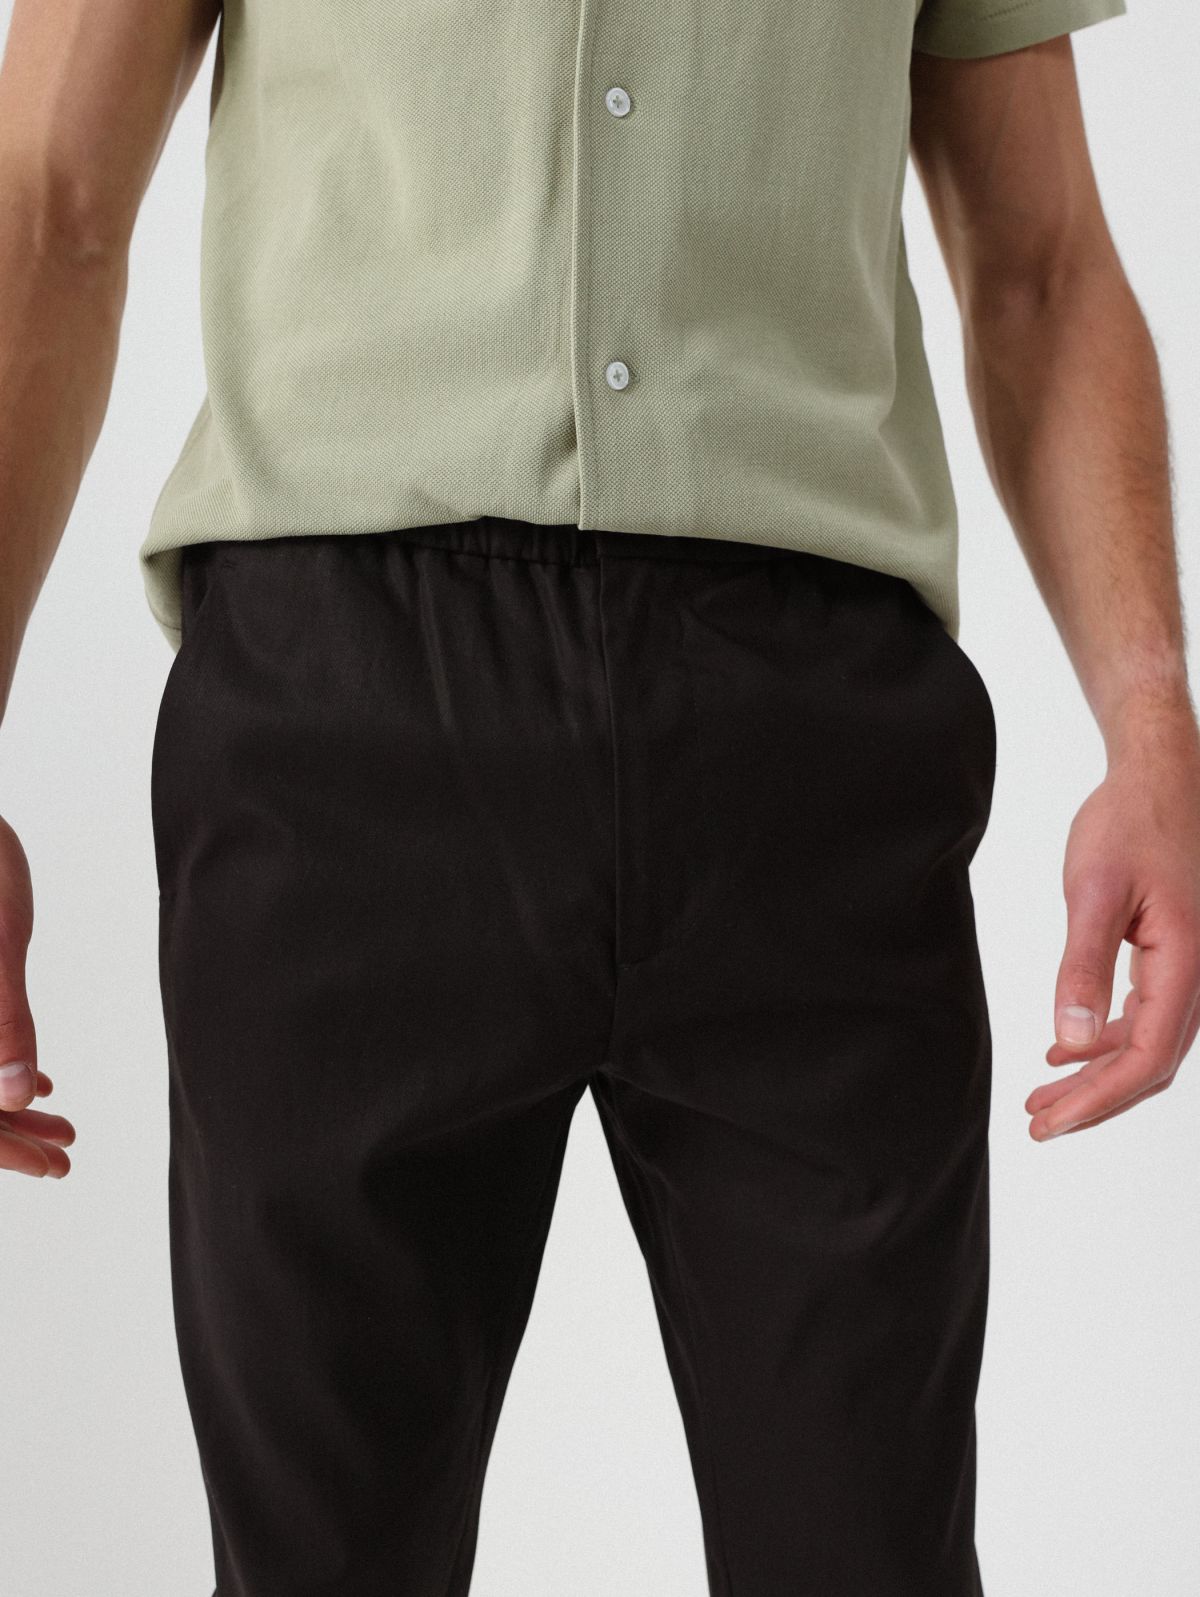  מכנסיים ארוכים בגזרת SLIM של TERMINAL X CUT N BASE